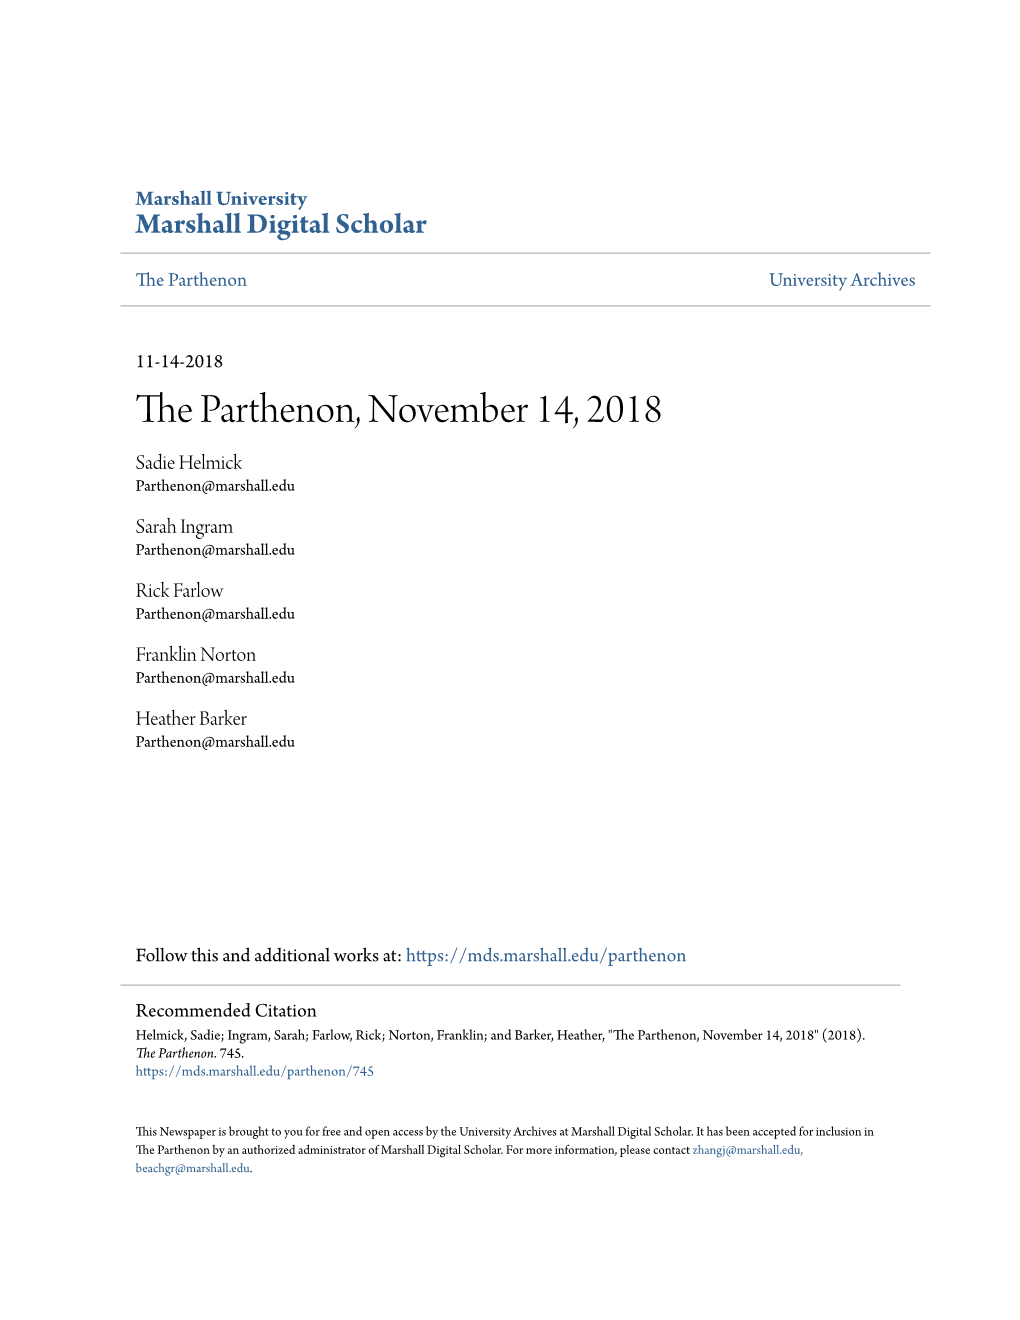 The Parthenon, November 14, 2018